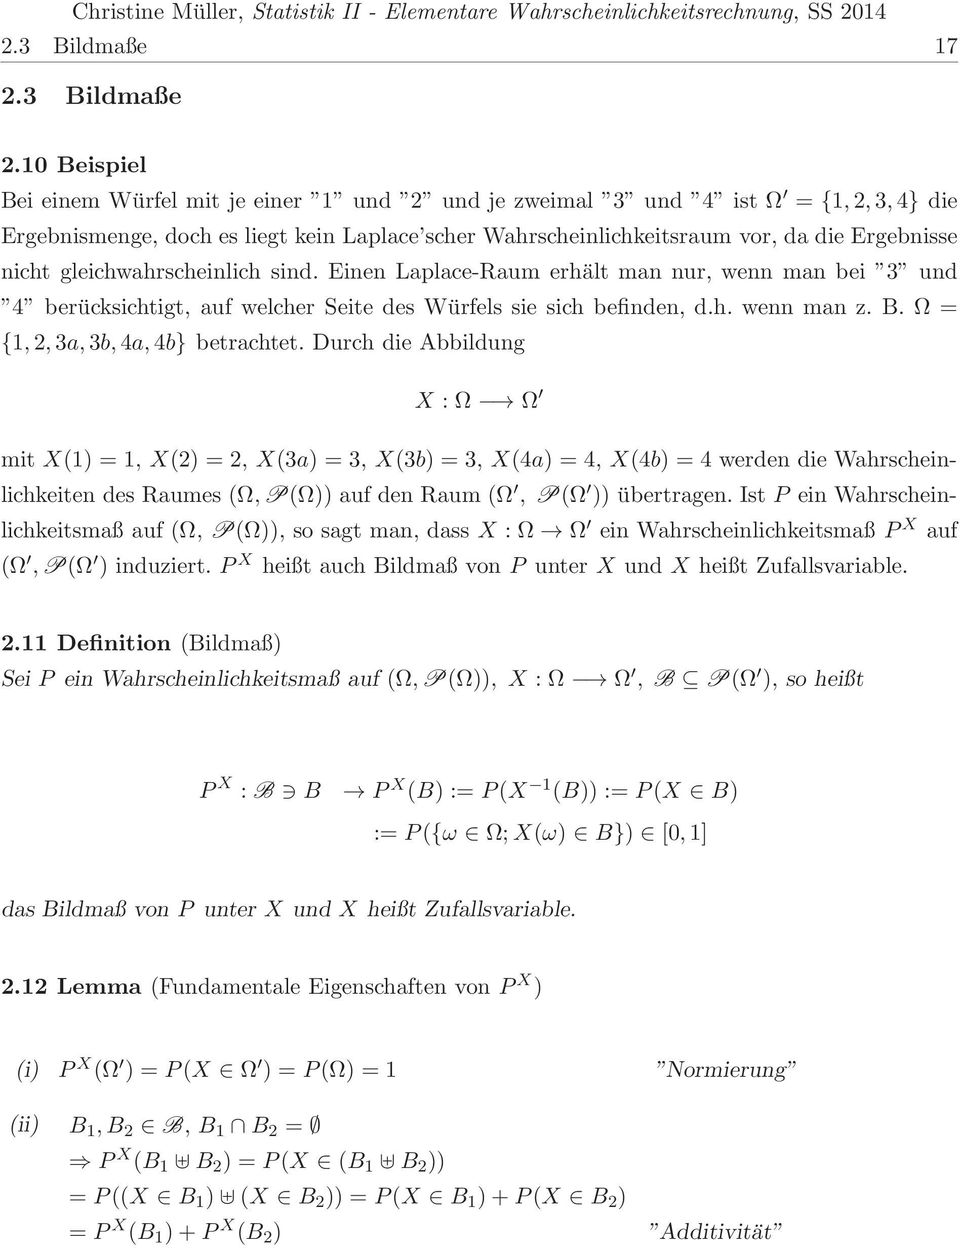 {1,2,3a,3b,4a,4b} betrachtet Durch die Abbildung X : Ω Ω mit X(1 = 1, X(2 = 2, X(3a = 3, X(3b = 3, X(4a = 4, X(4b = 4 werden die Wahrscheinlichkeiten des Raumes (Ω,P(Ω auf den Raum (Ω, P(Ω übertragen